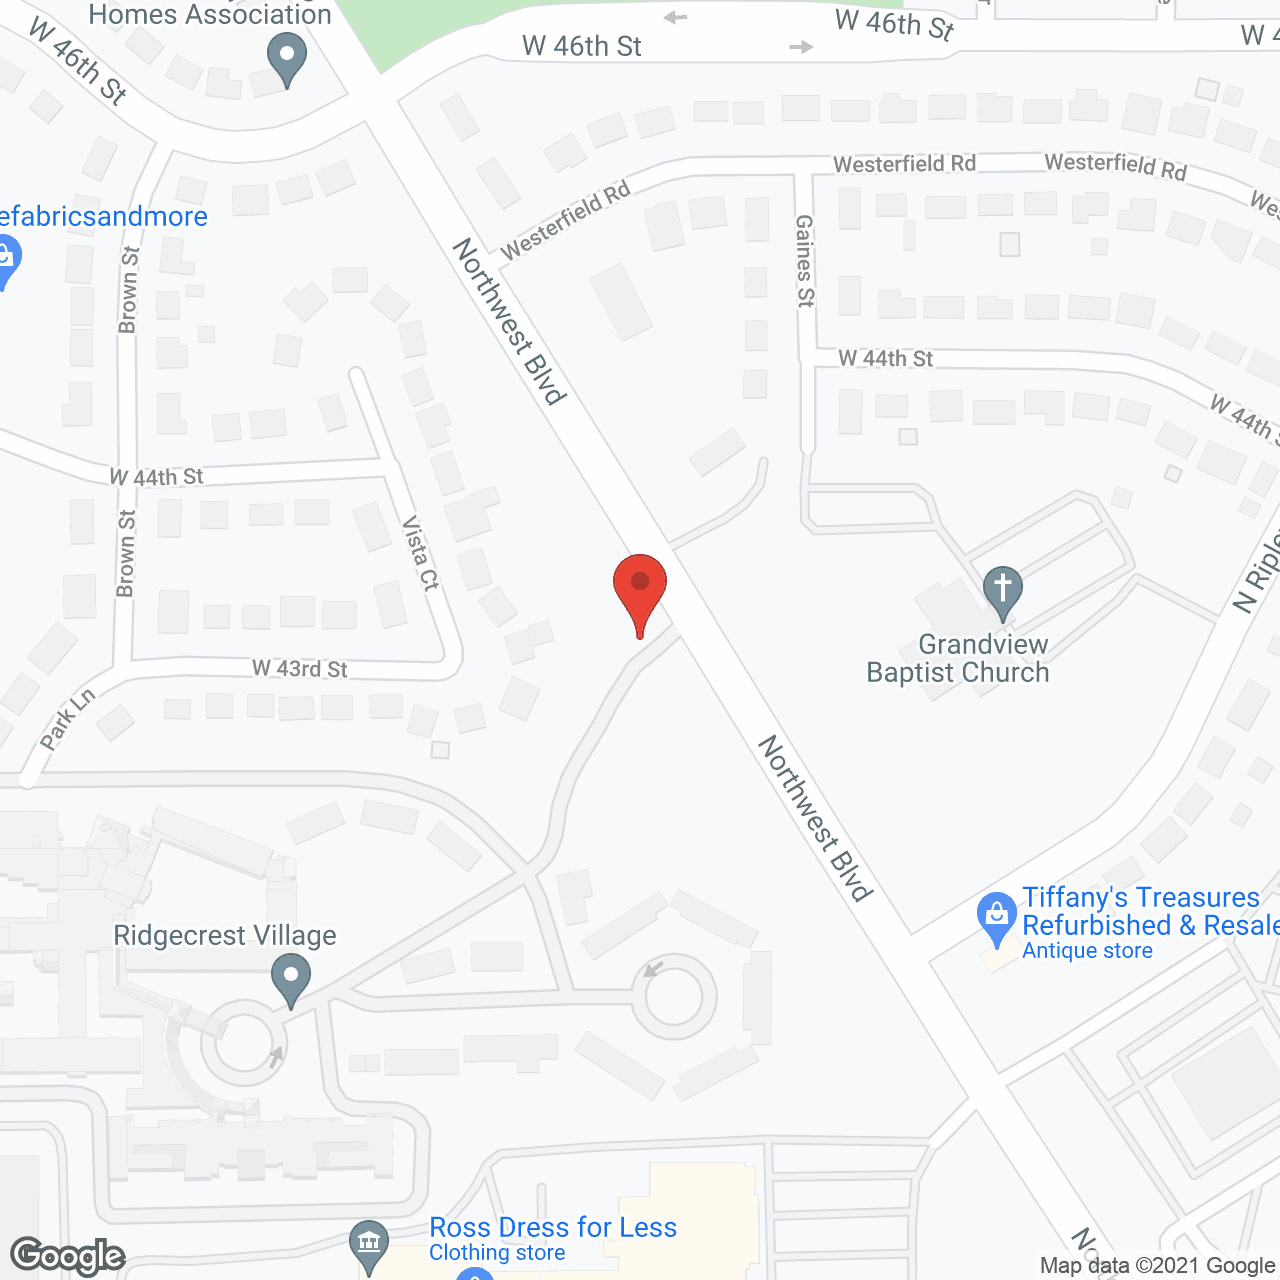 Ridgecrest Village in google map